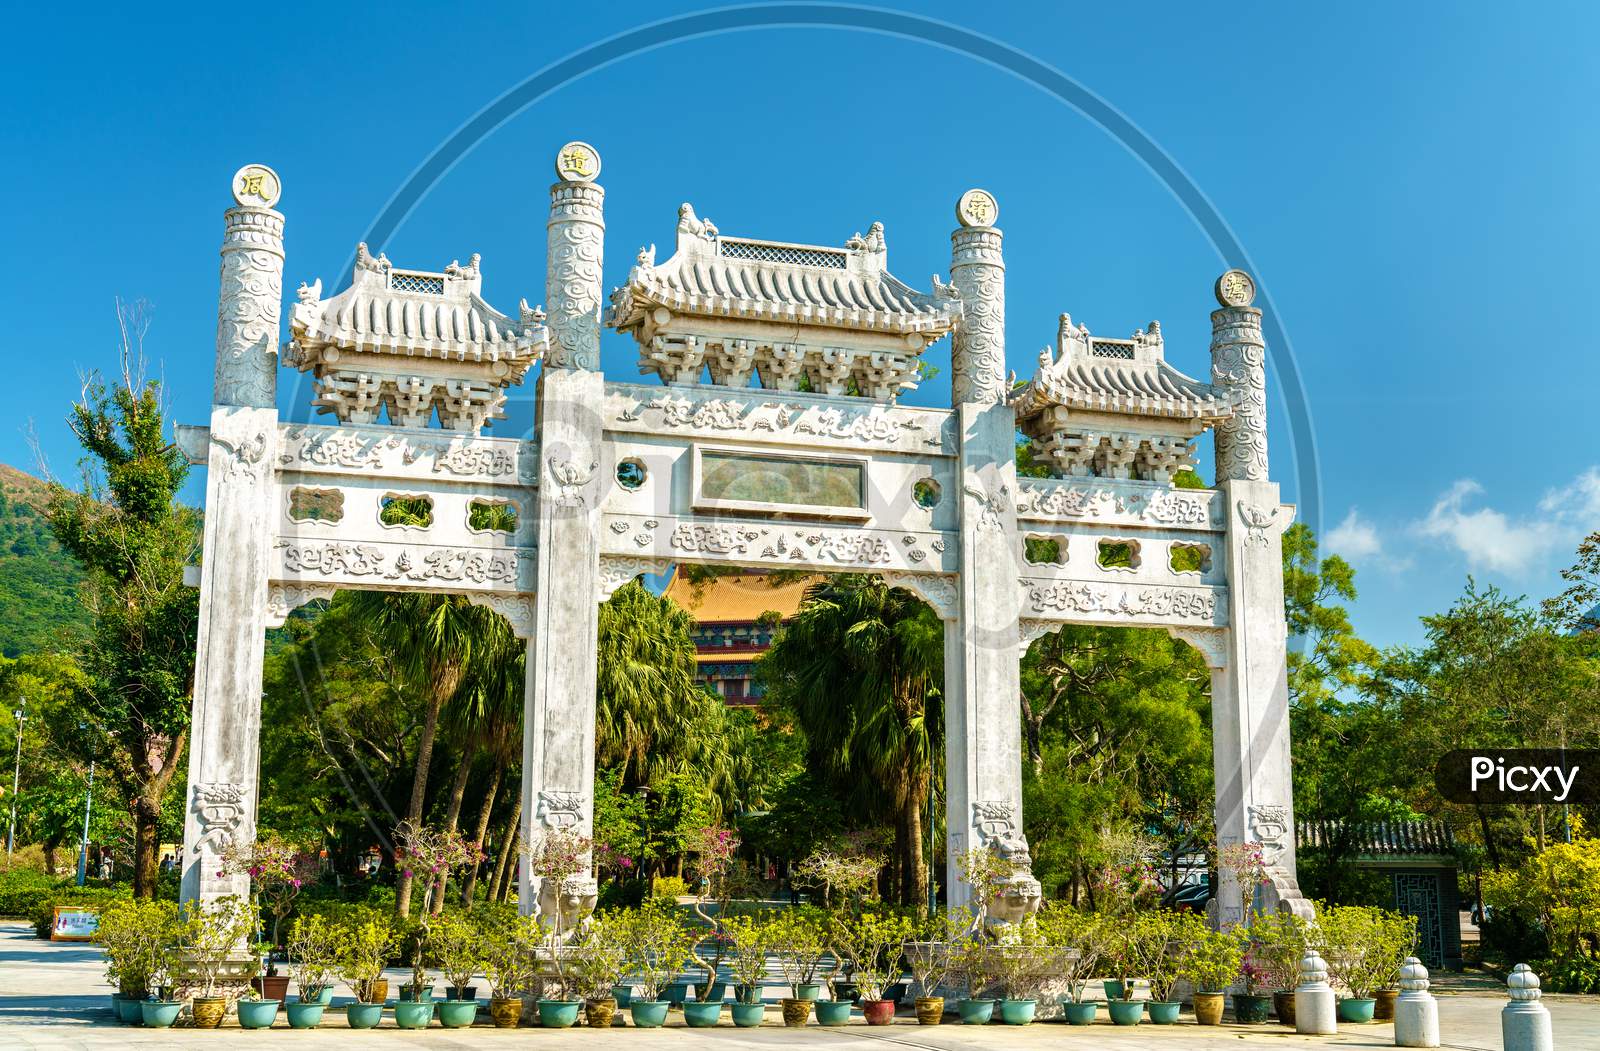 Entrance Gate To Po Lin Monastery At Ngong Ping - Hong Kong, China